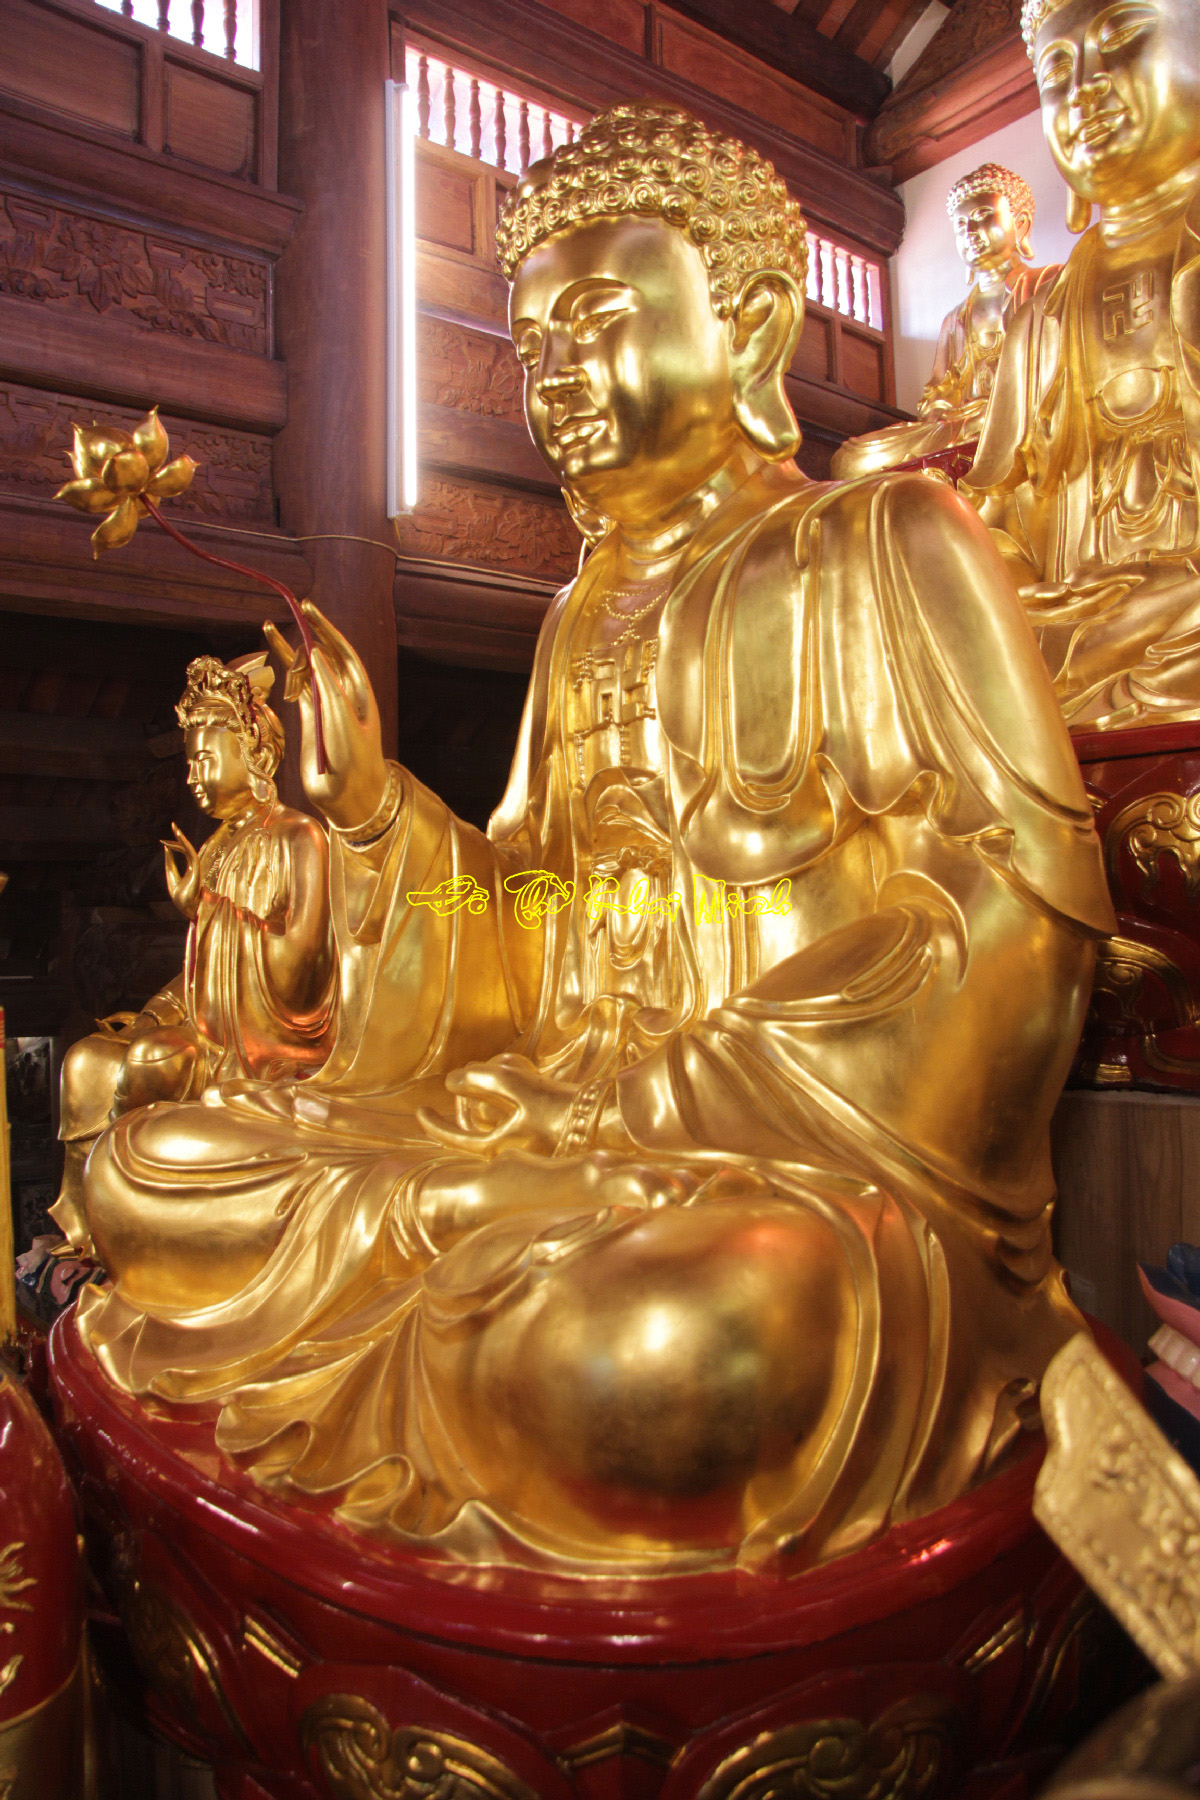 Tượng Phật Thích Ca Mâu Ni dát vàng 9999